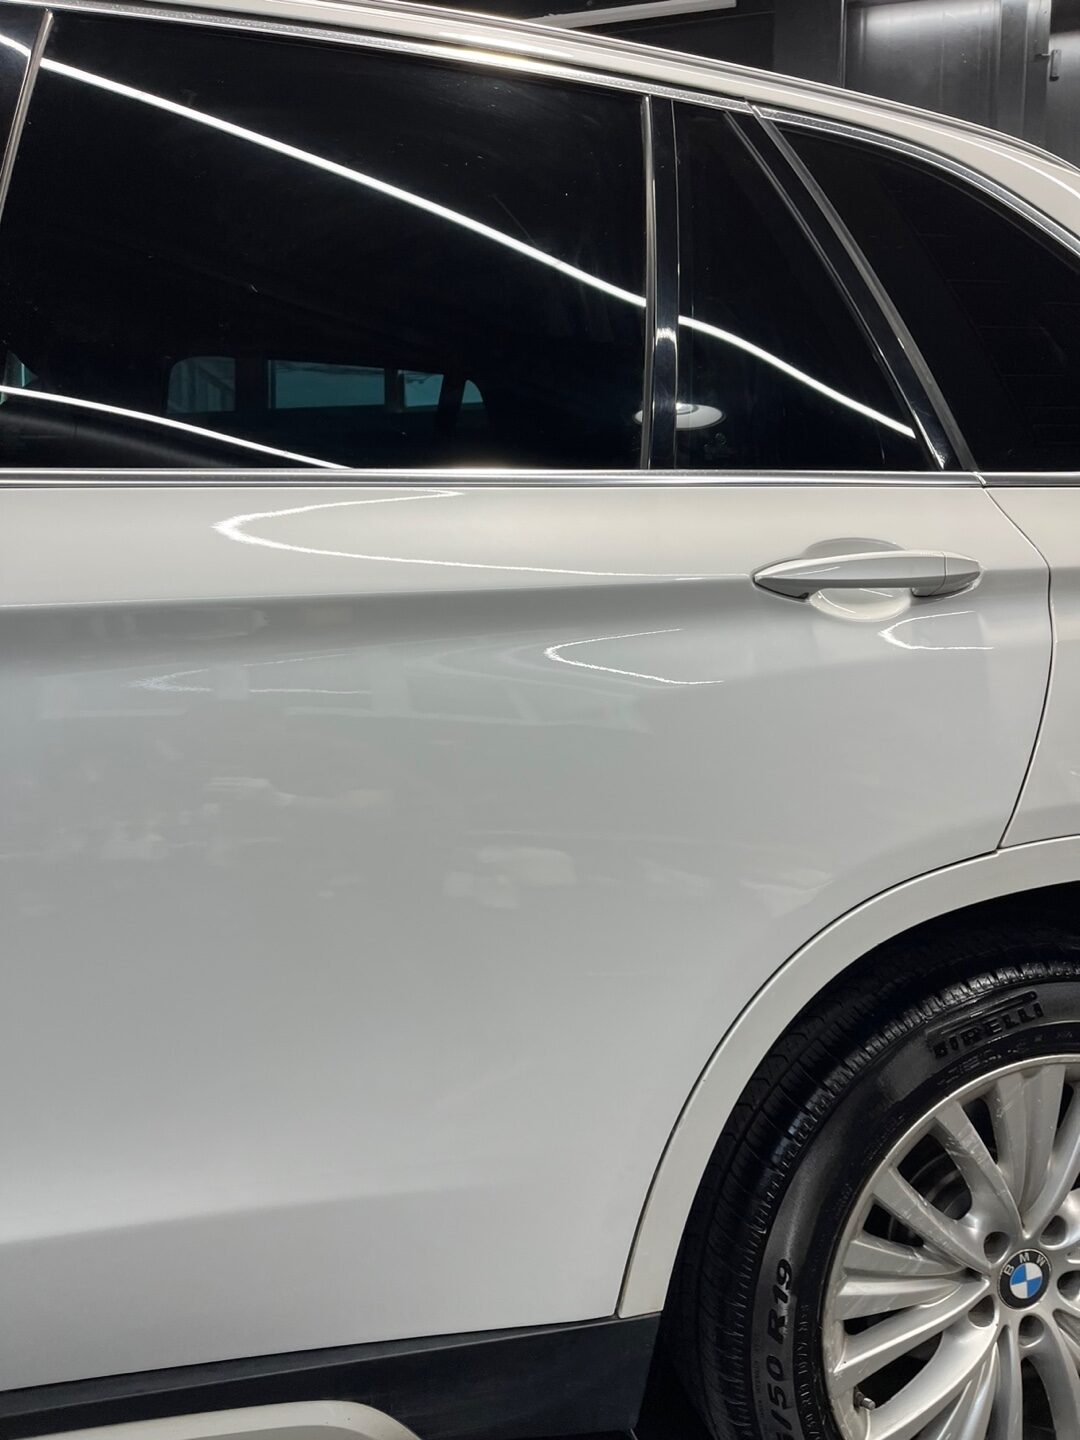 일산덴트 X5 BMW 광택이 사라진 클리어코트, 투명도장 벗겨짐 현상 해결방법은?</a>